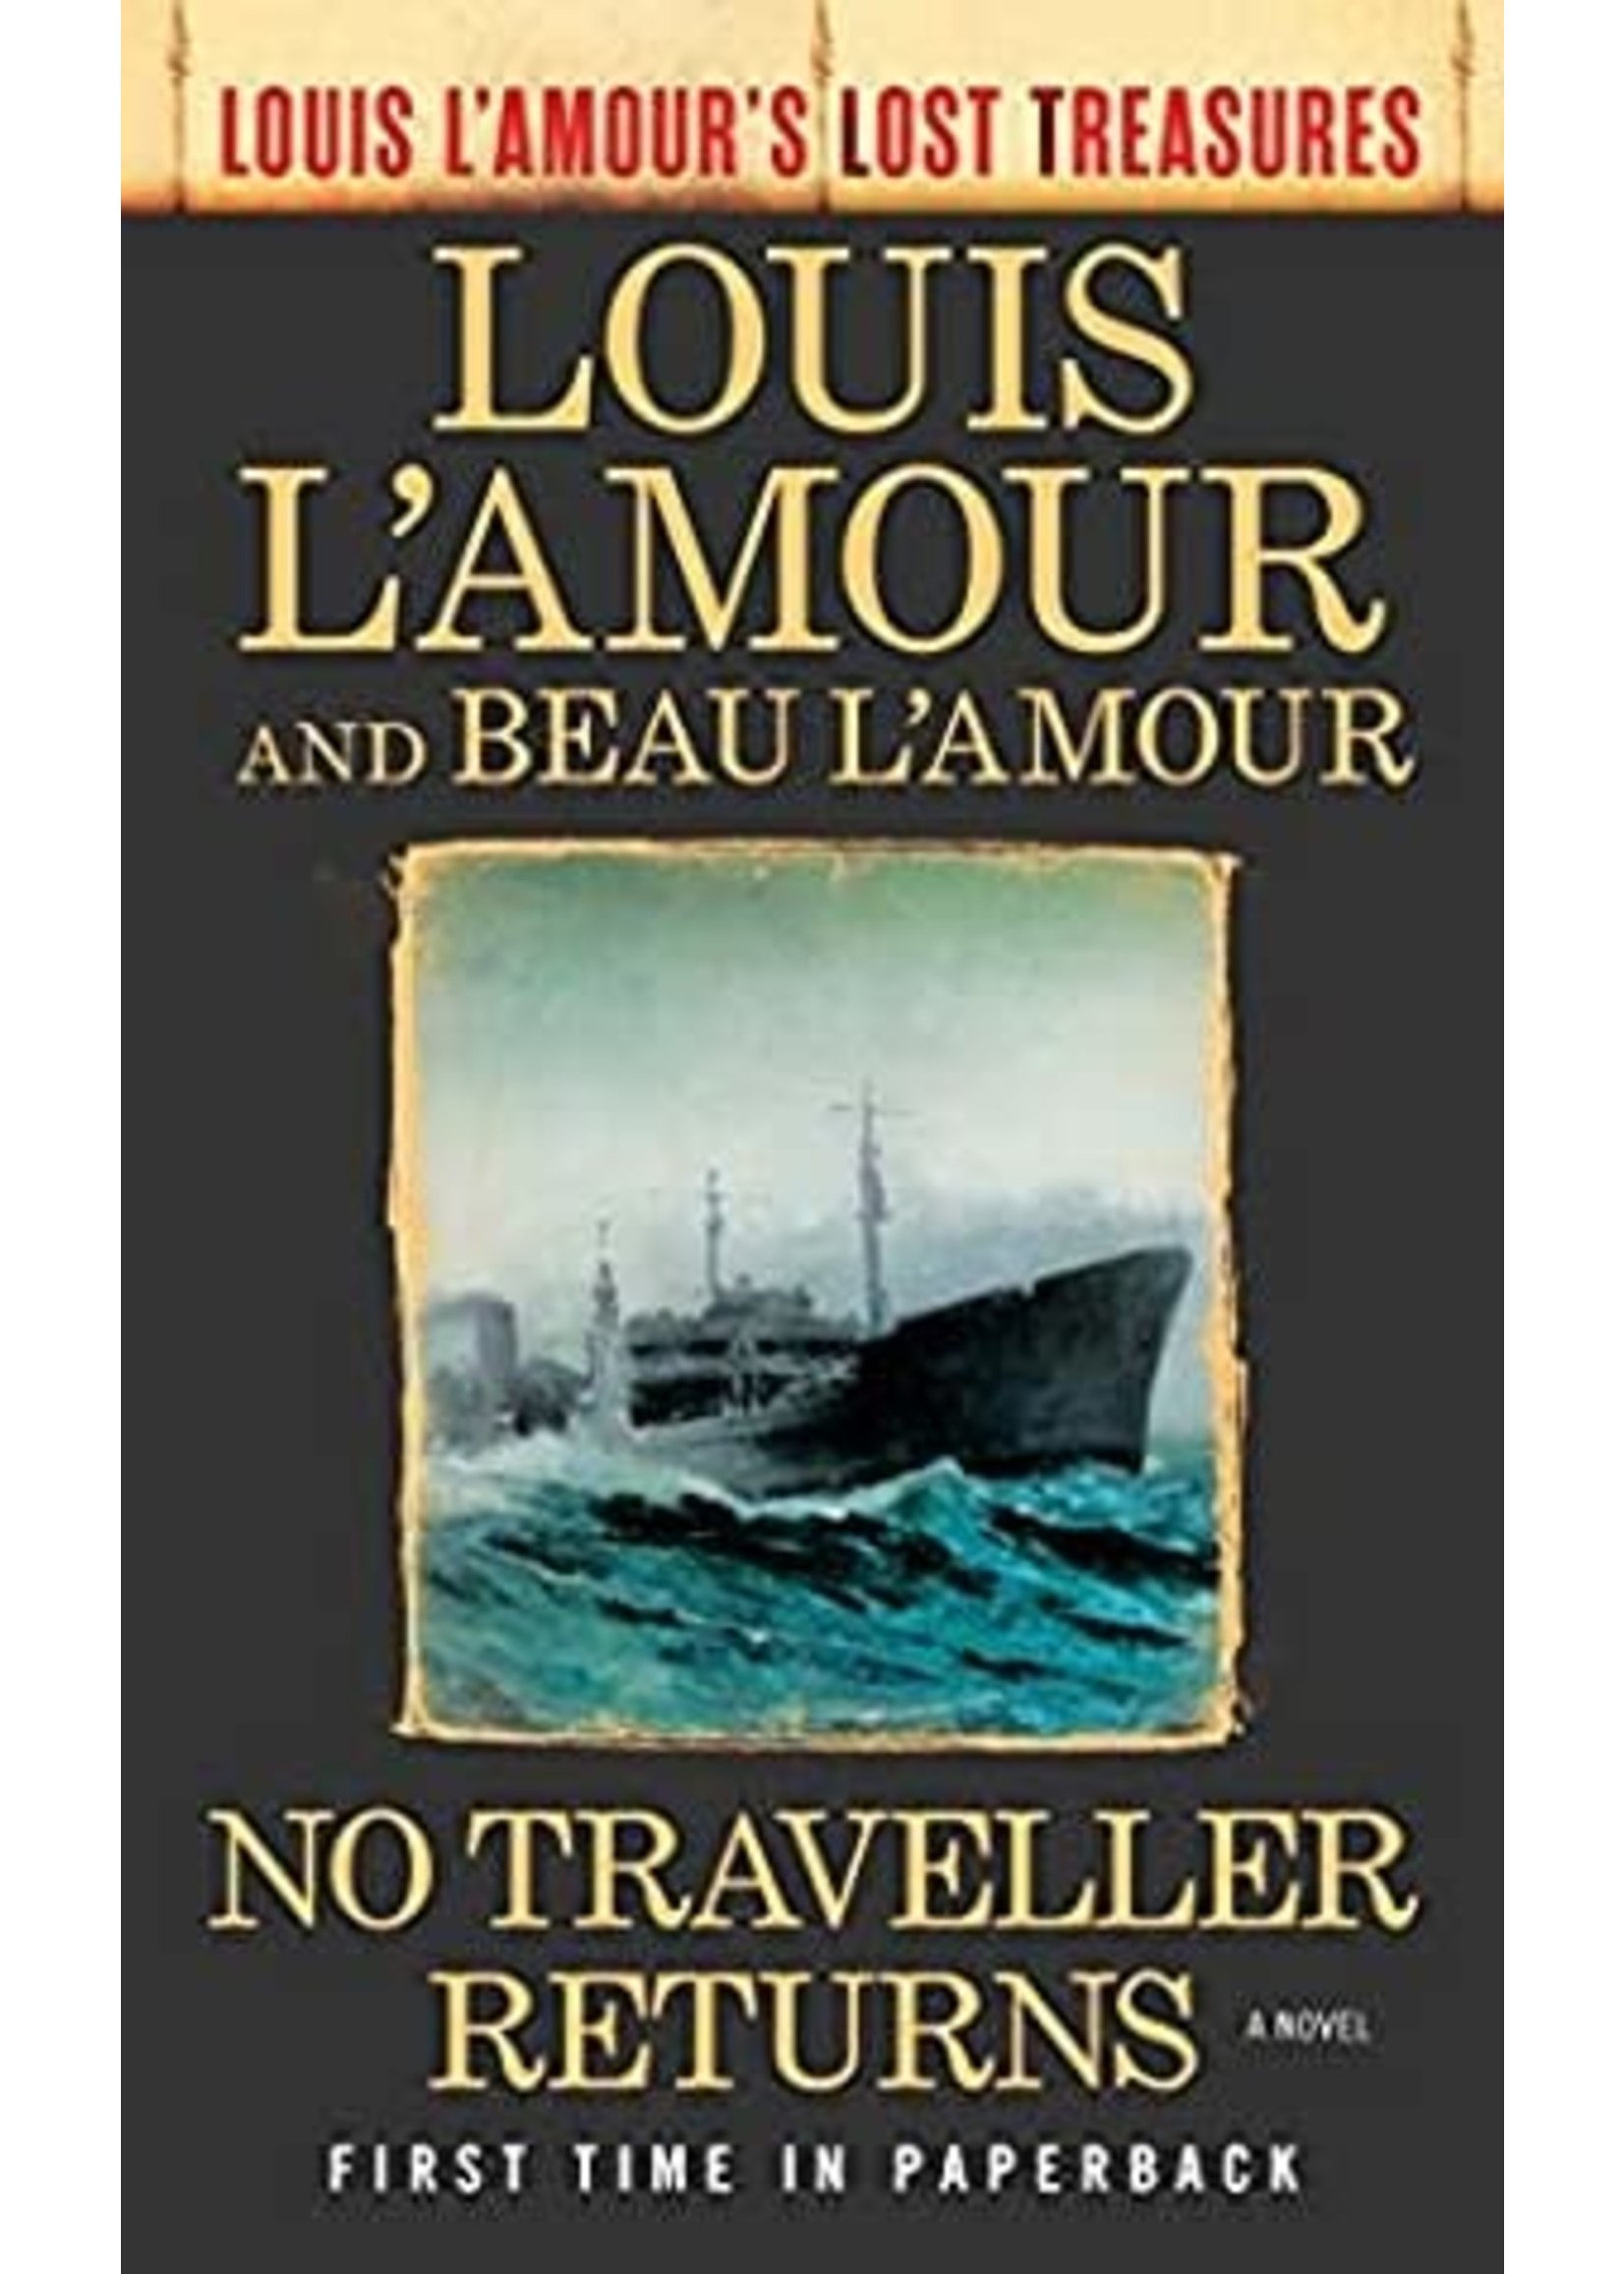 No Traveller Returns (Louis l'Amour's Lost Treasures) by Louis L'Amour, Beau L'Amour